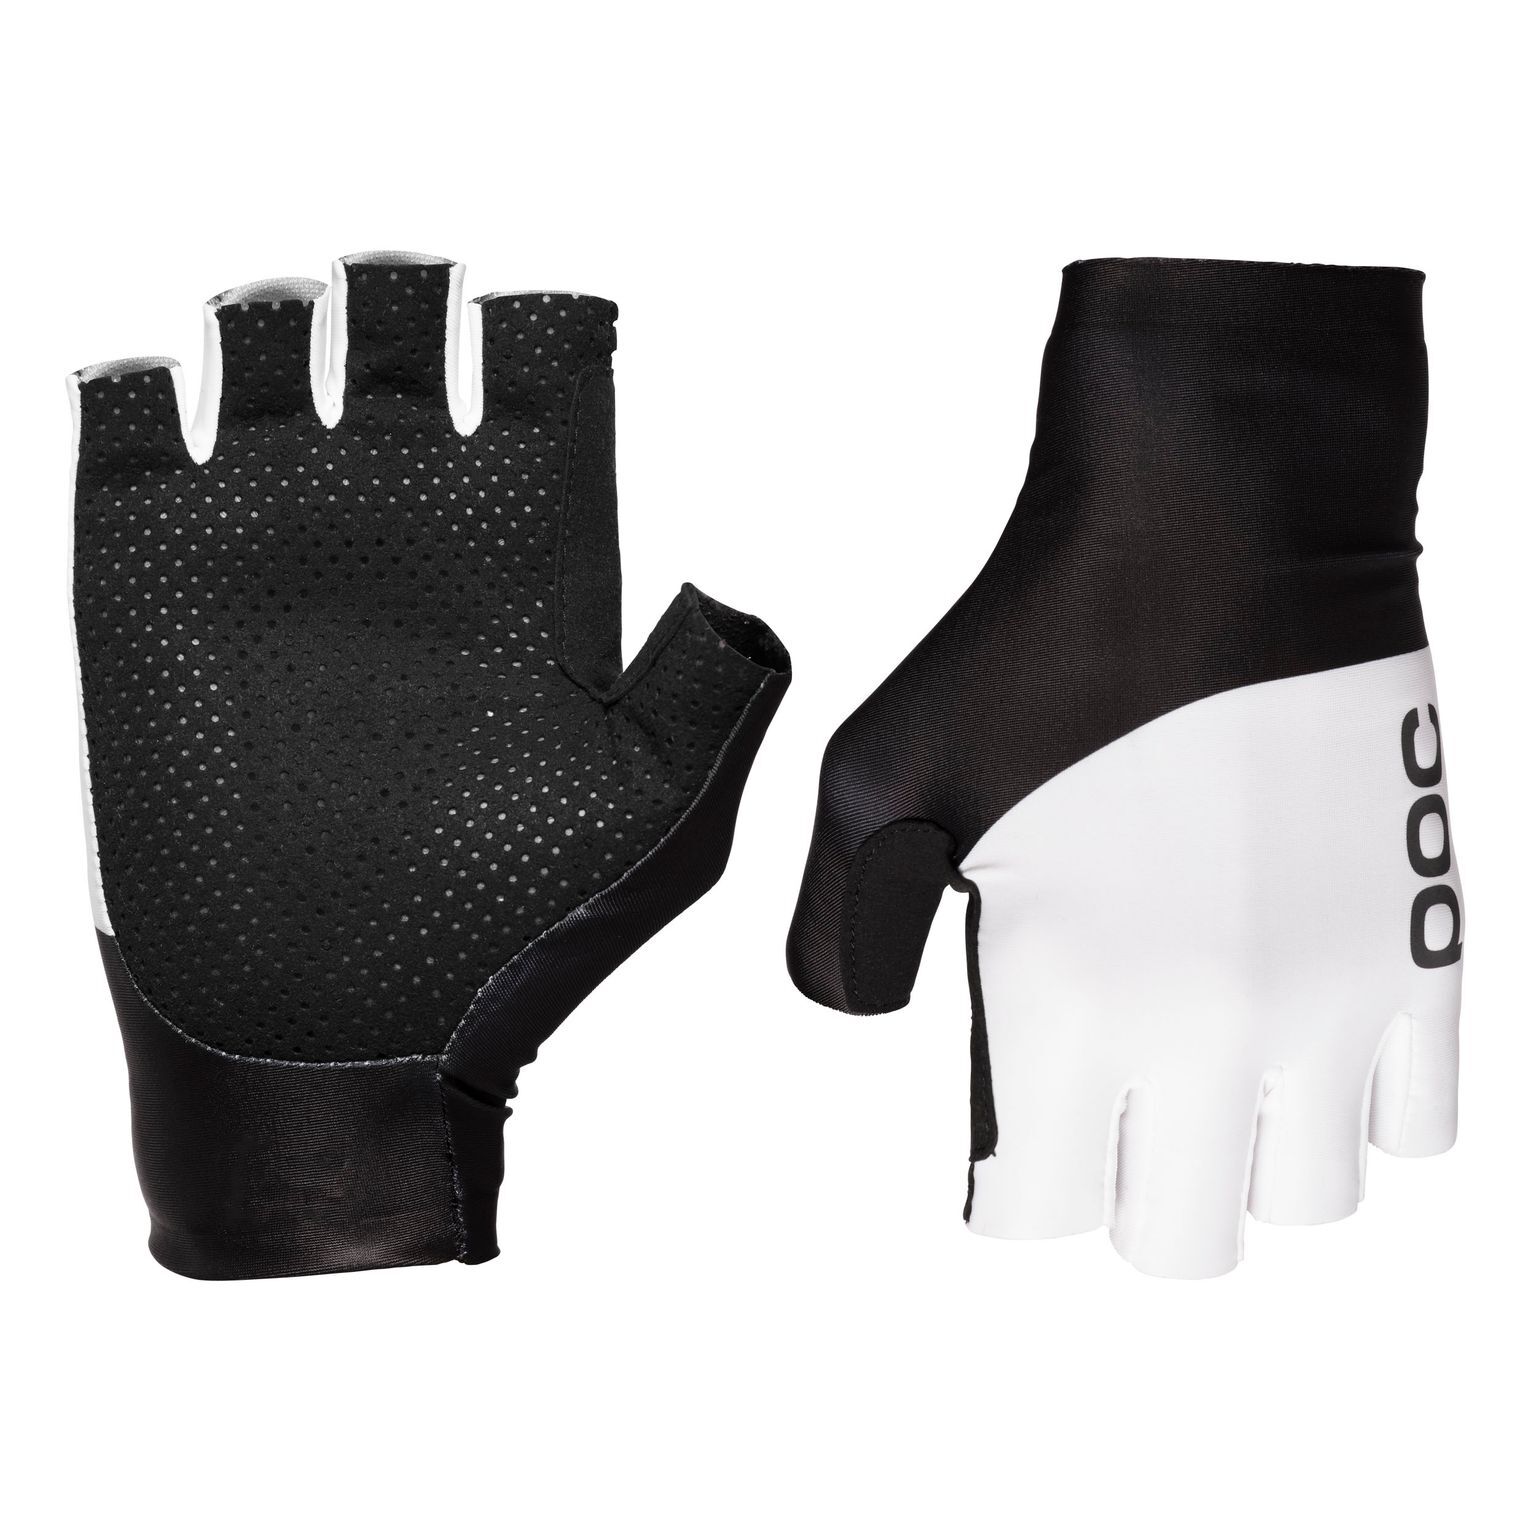 Poc Raceday Aero Glove - Short finger gloves